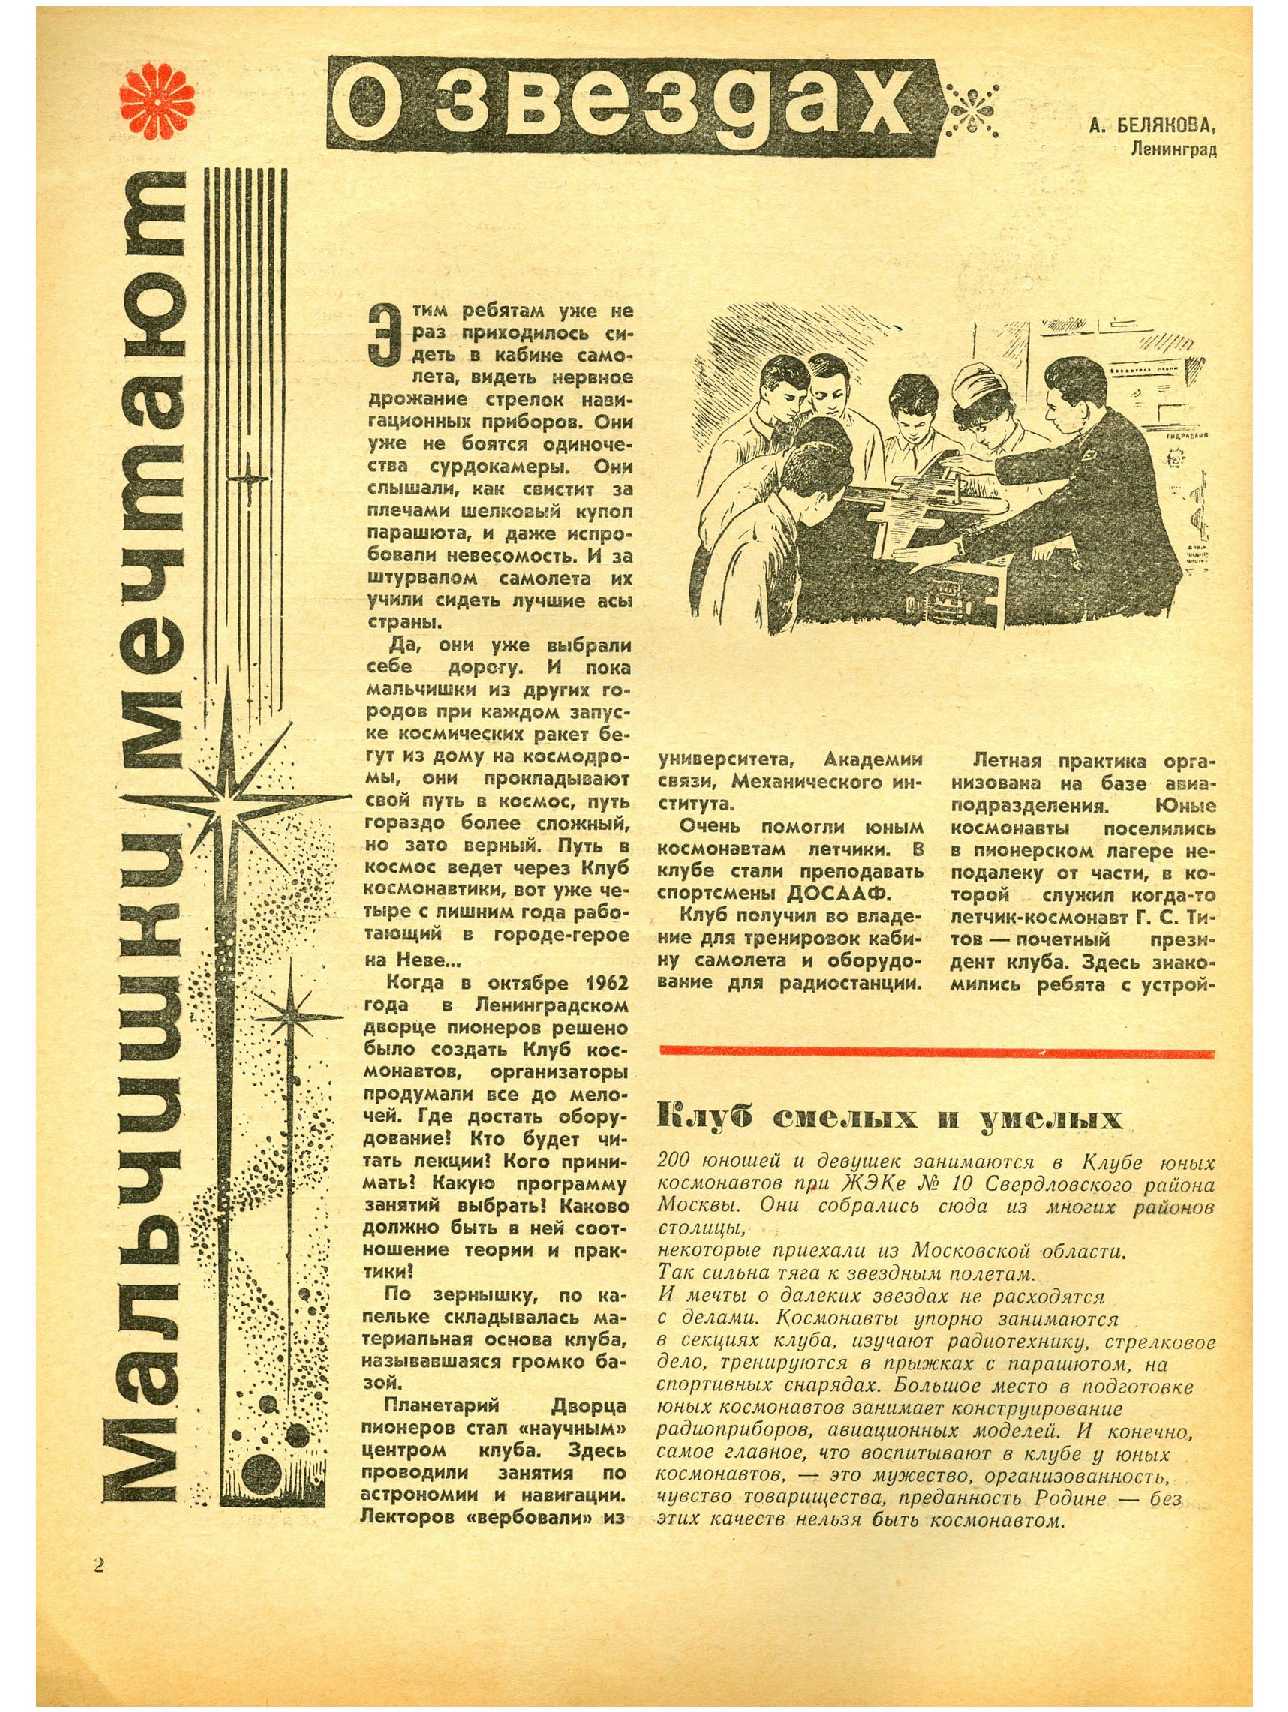 МК 11, 1966, 2 c.